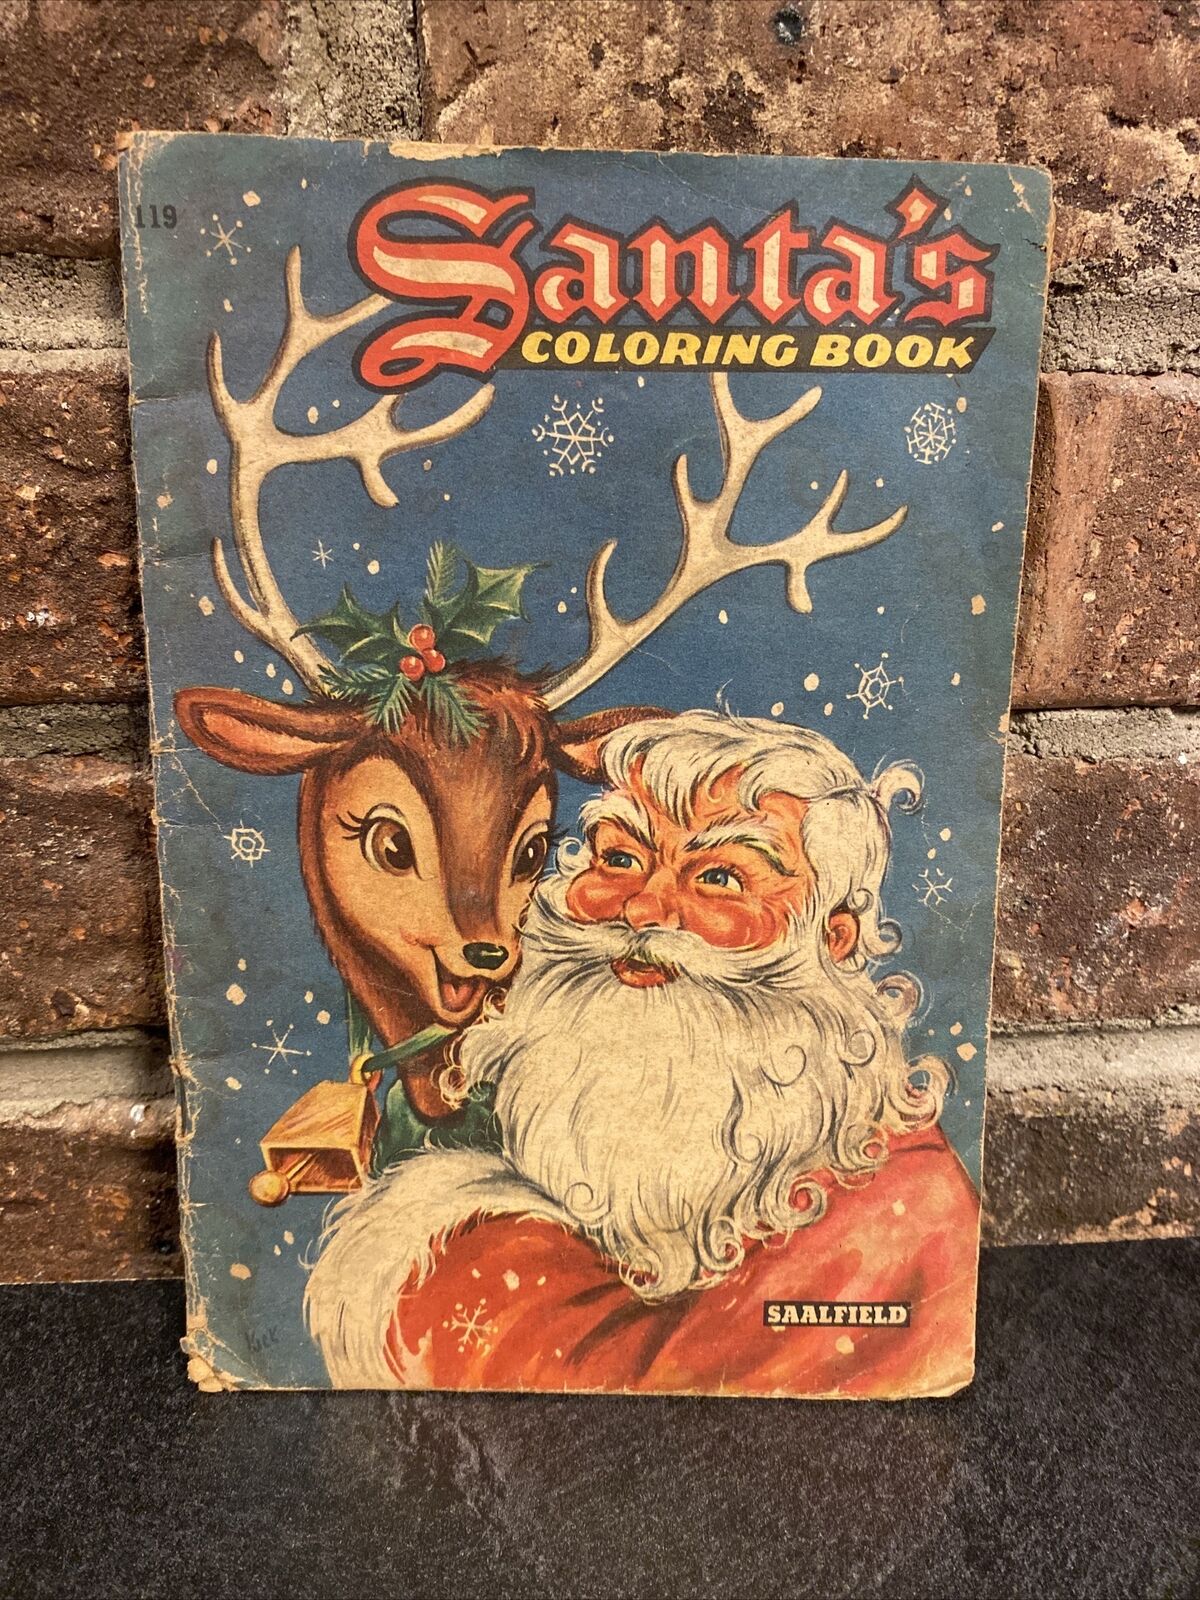 USED Vintage Saalfield Coloring Book- Christmas/Santa Claus 1950’s-1960’s- LOOK